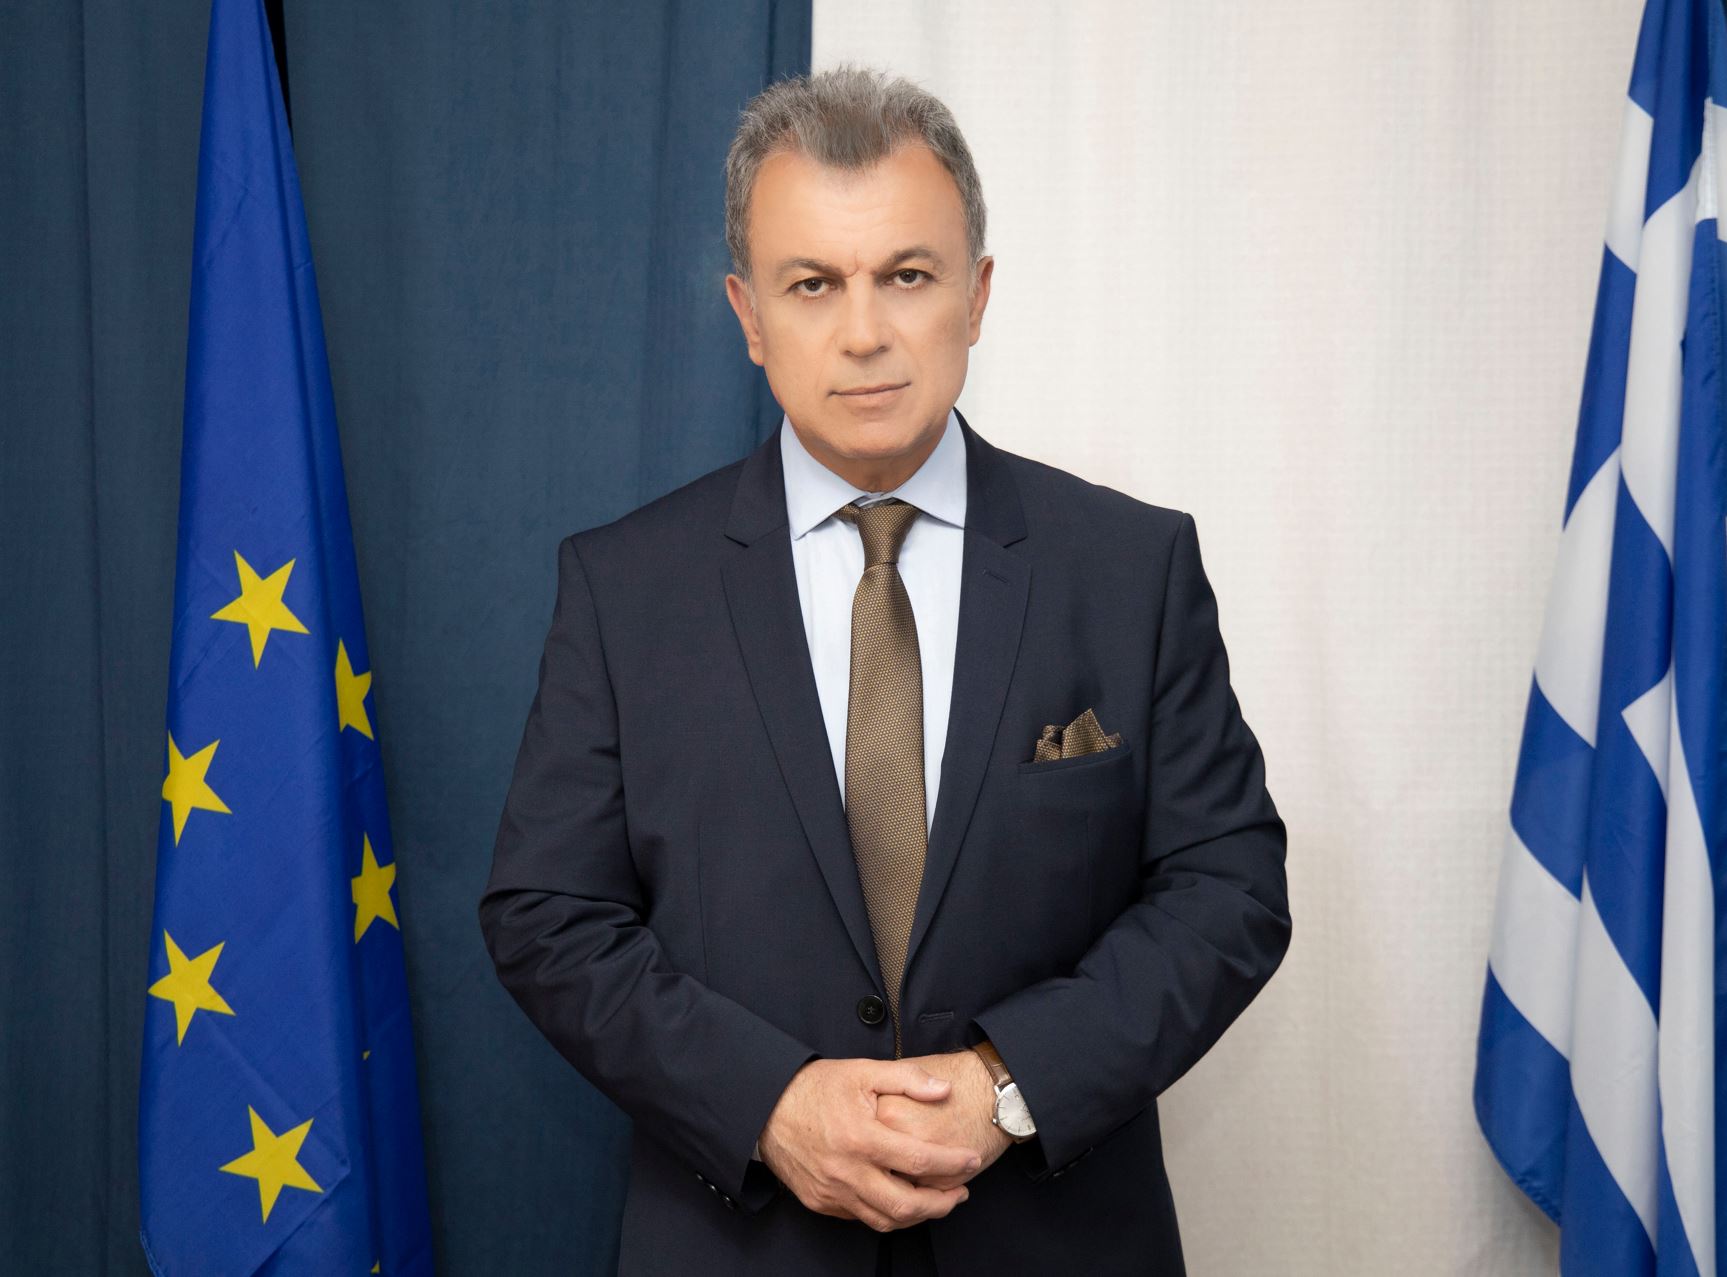 Η επίσημη ανακοίνωση του Γ. Αμανατίδη ότι θα είναι Υποψήφιος Περιφερειάρχης Δυτικής Μακεδονίας